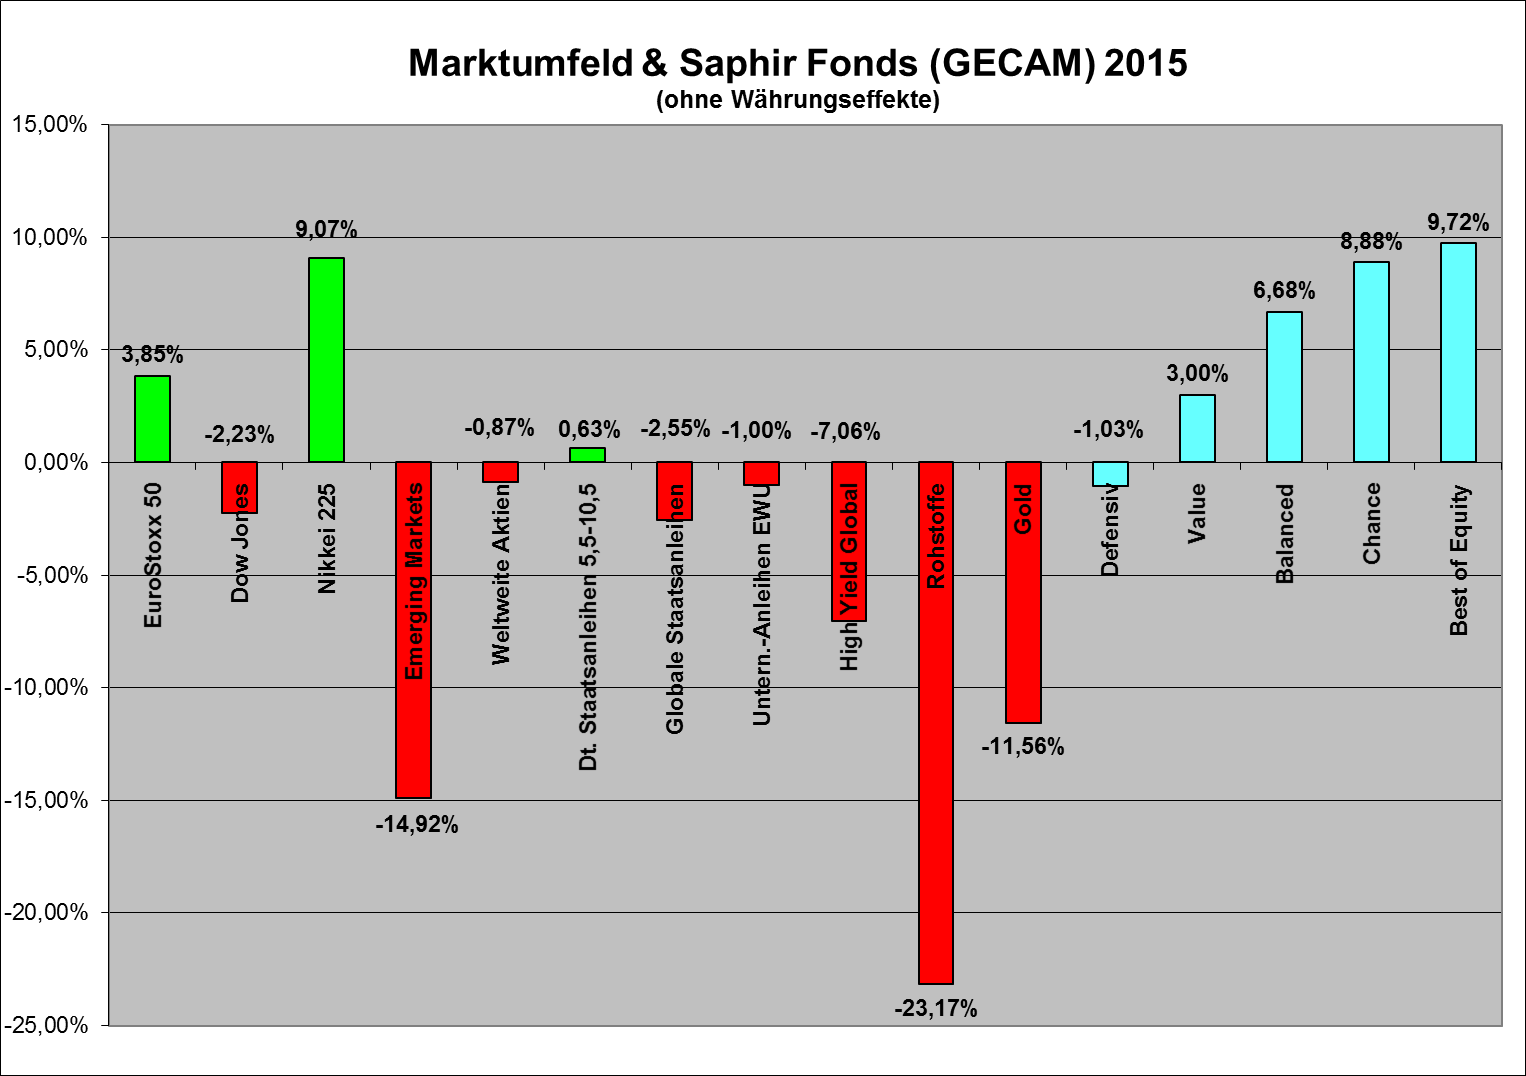 Marktumfeld & Saphir Fonds 2015 Hervorragende